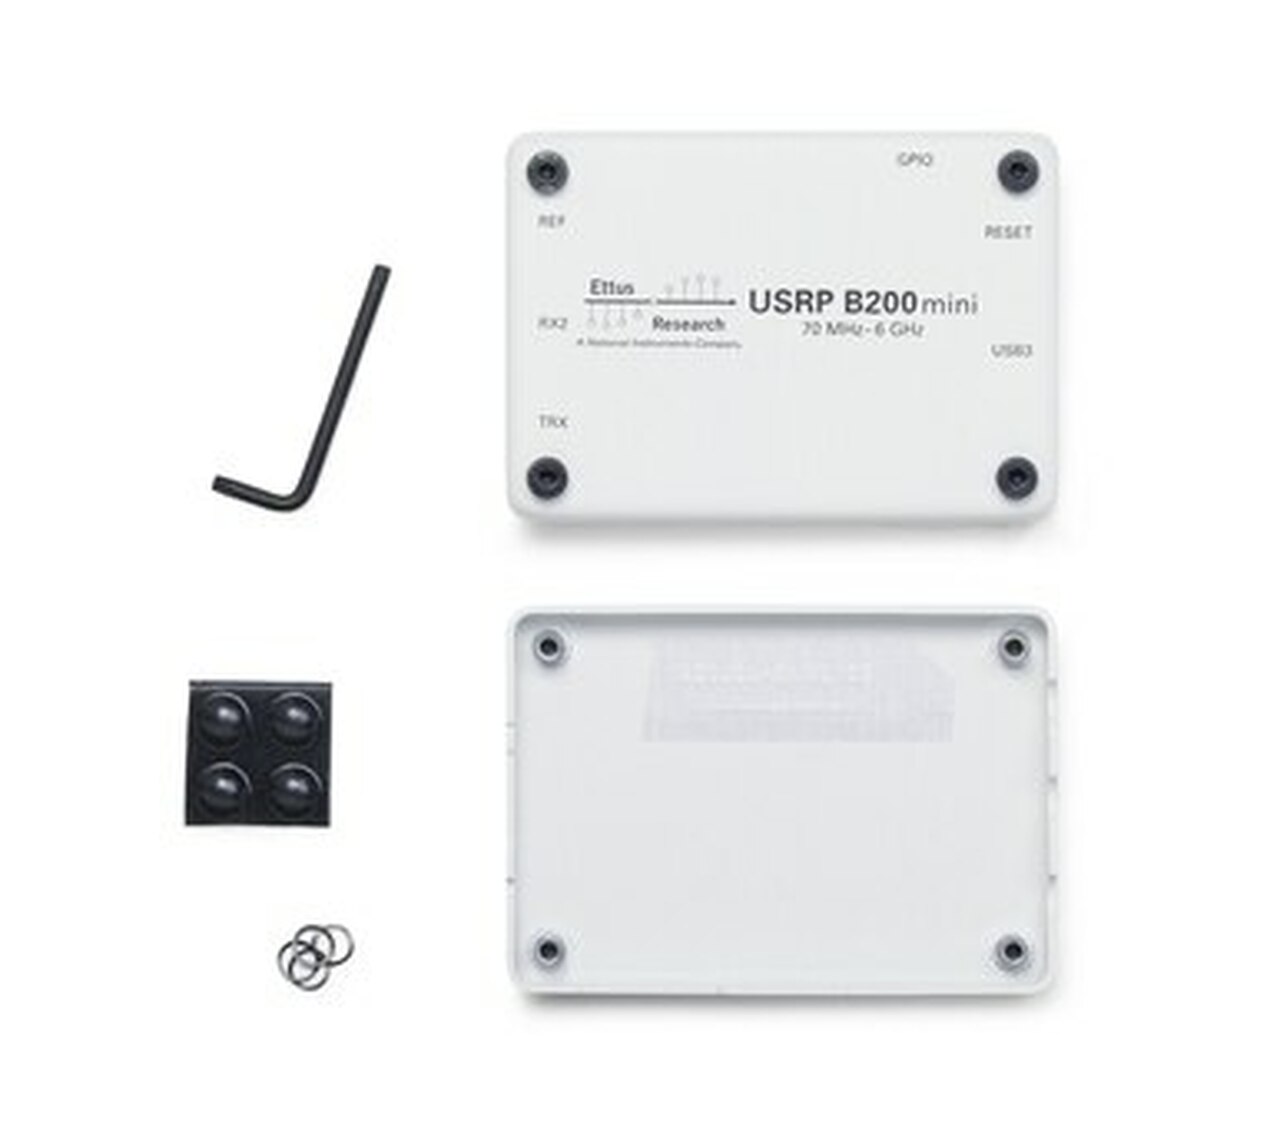 Enclosure Kit for Ettus USRP B200mini